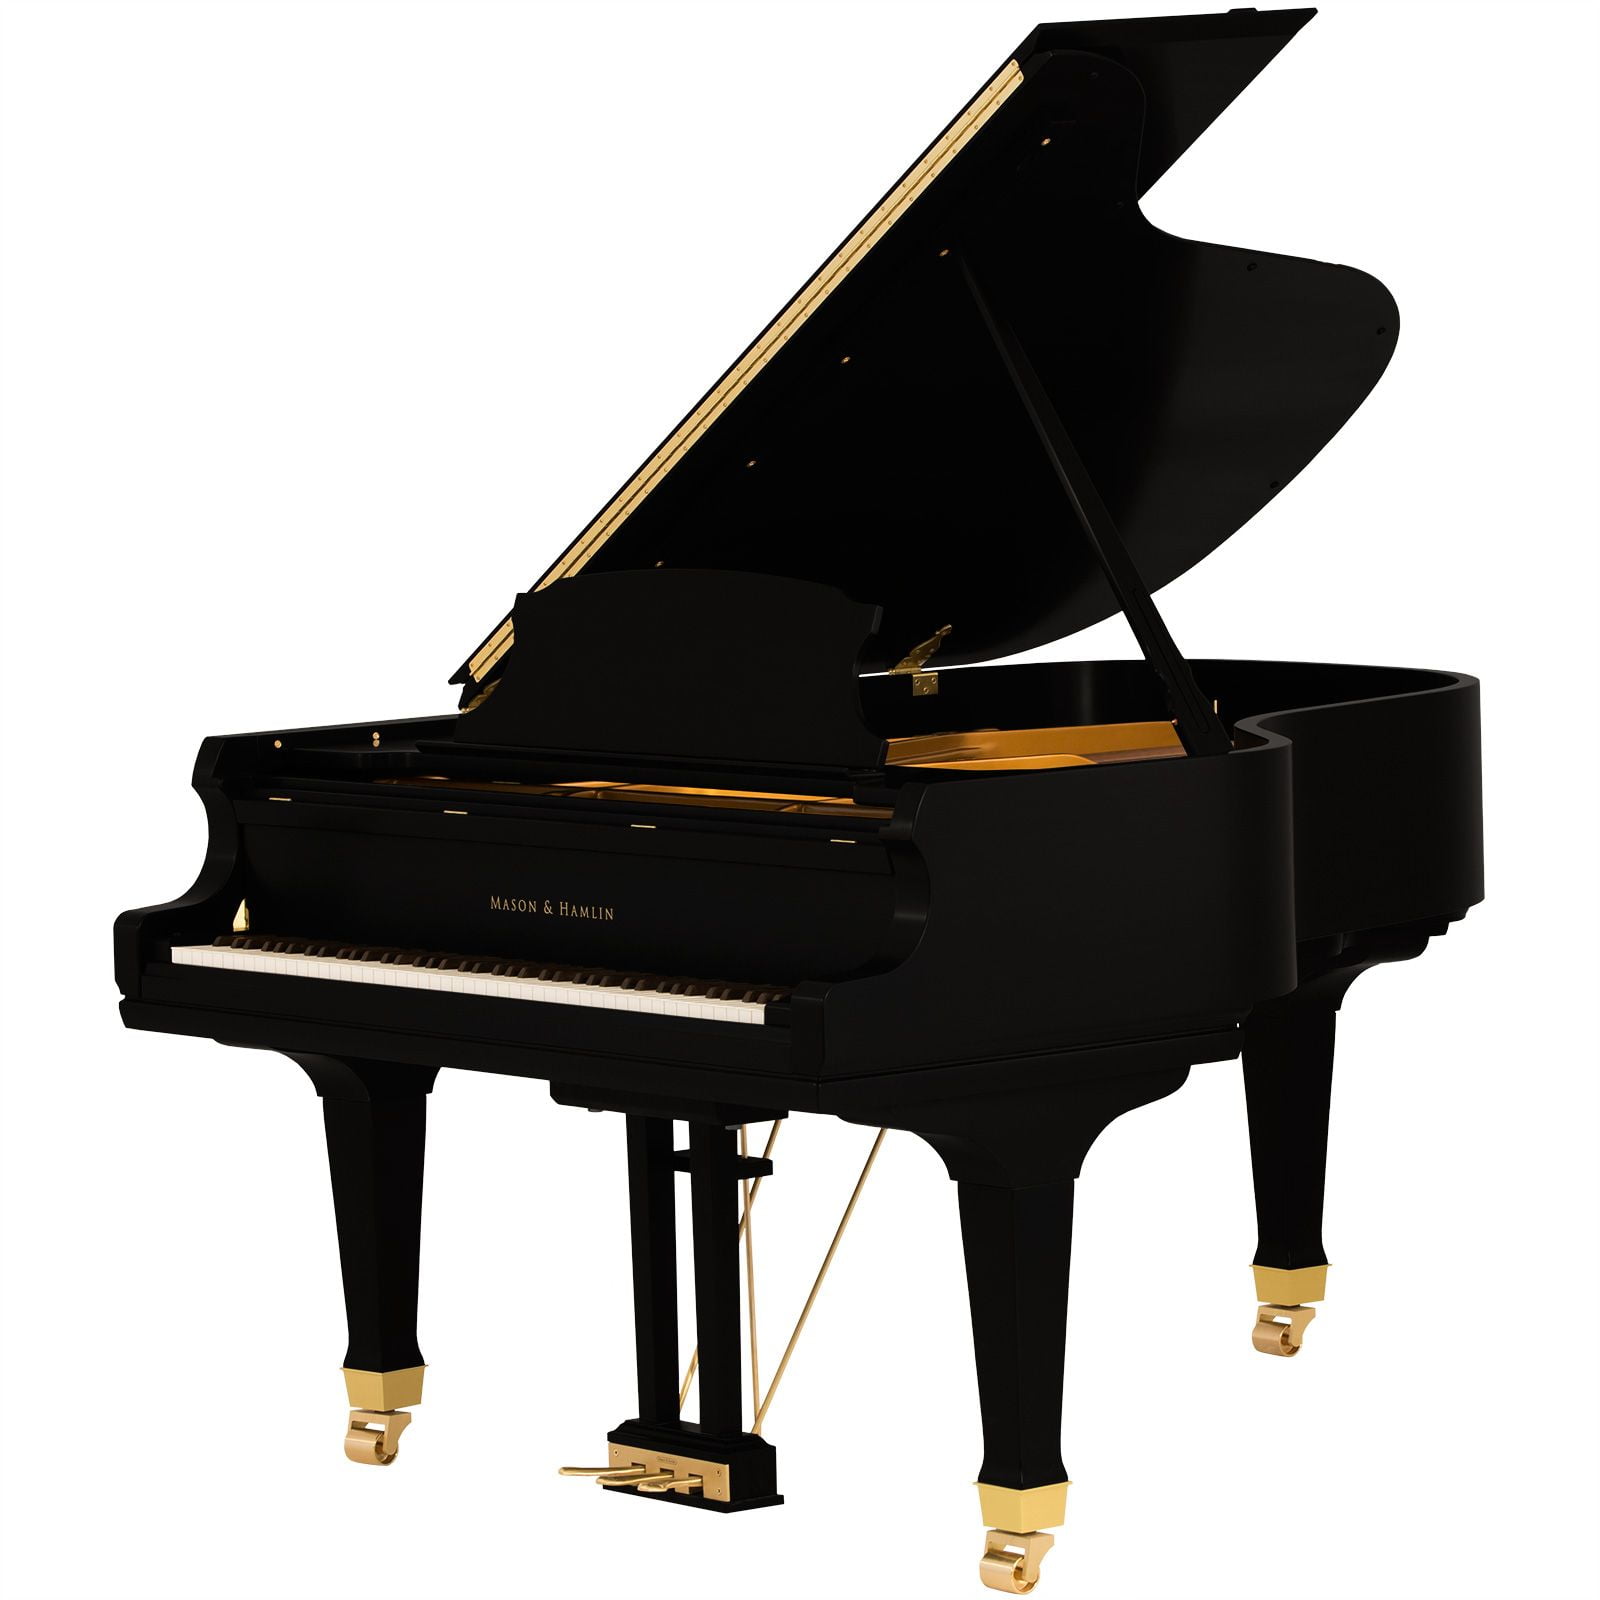 AA 64 Ebony Satin opt • Mason & Hamlin Piano Company • Made in the USA